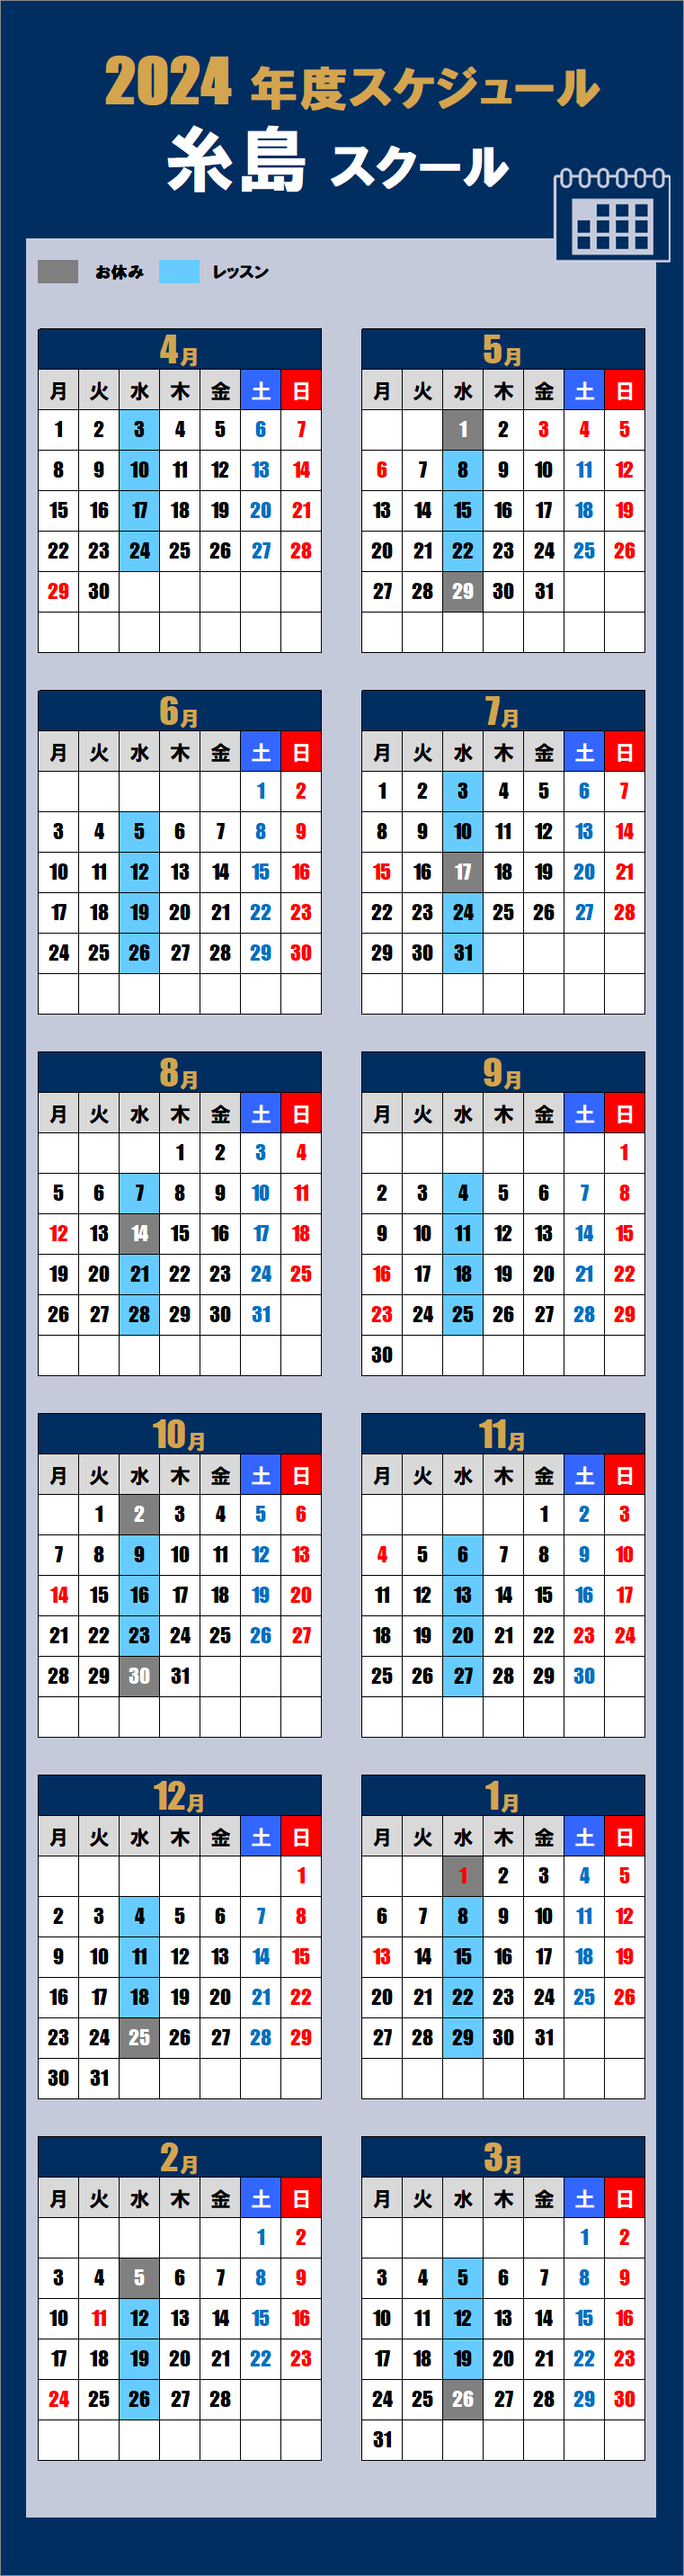 2024糸島スクールカレンダー